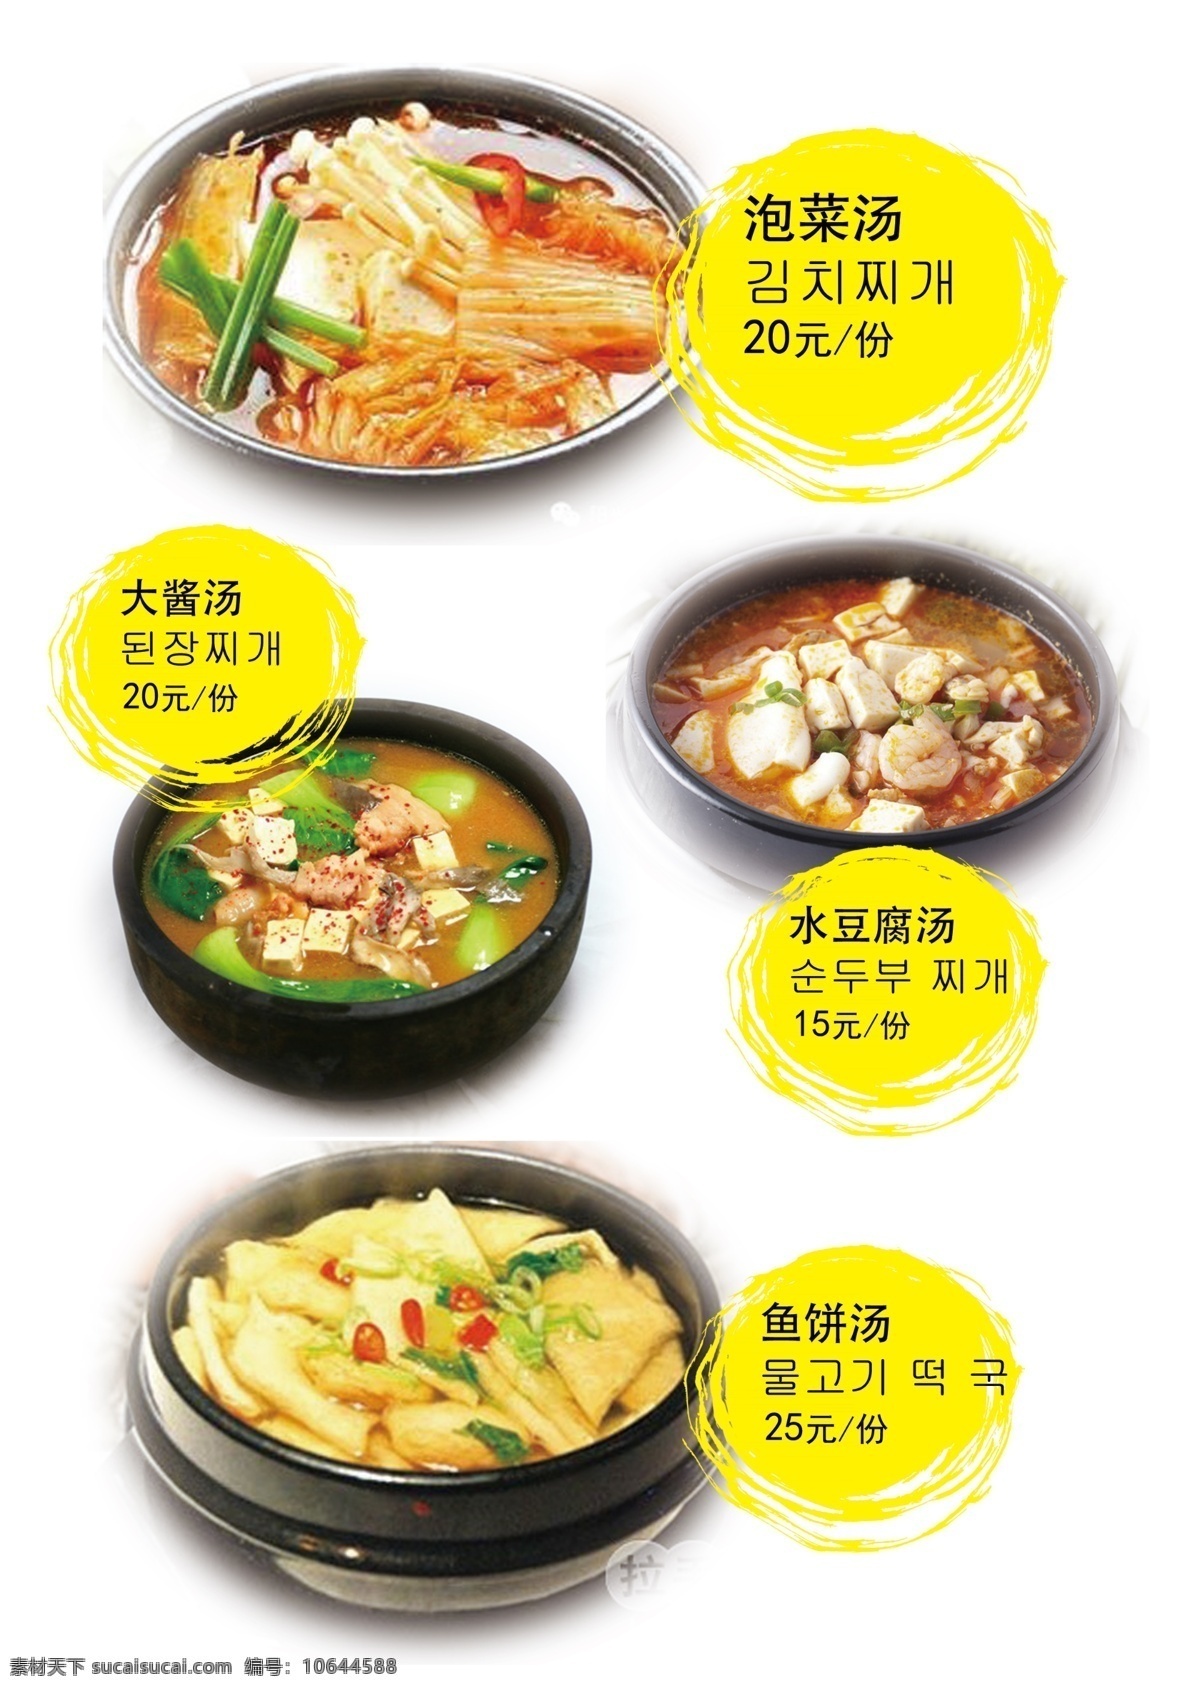 味家菜谱 菜单 韩国 泡菜汤 大酱汤 水豆腐汤 鱼饼汤 分层